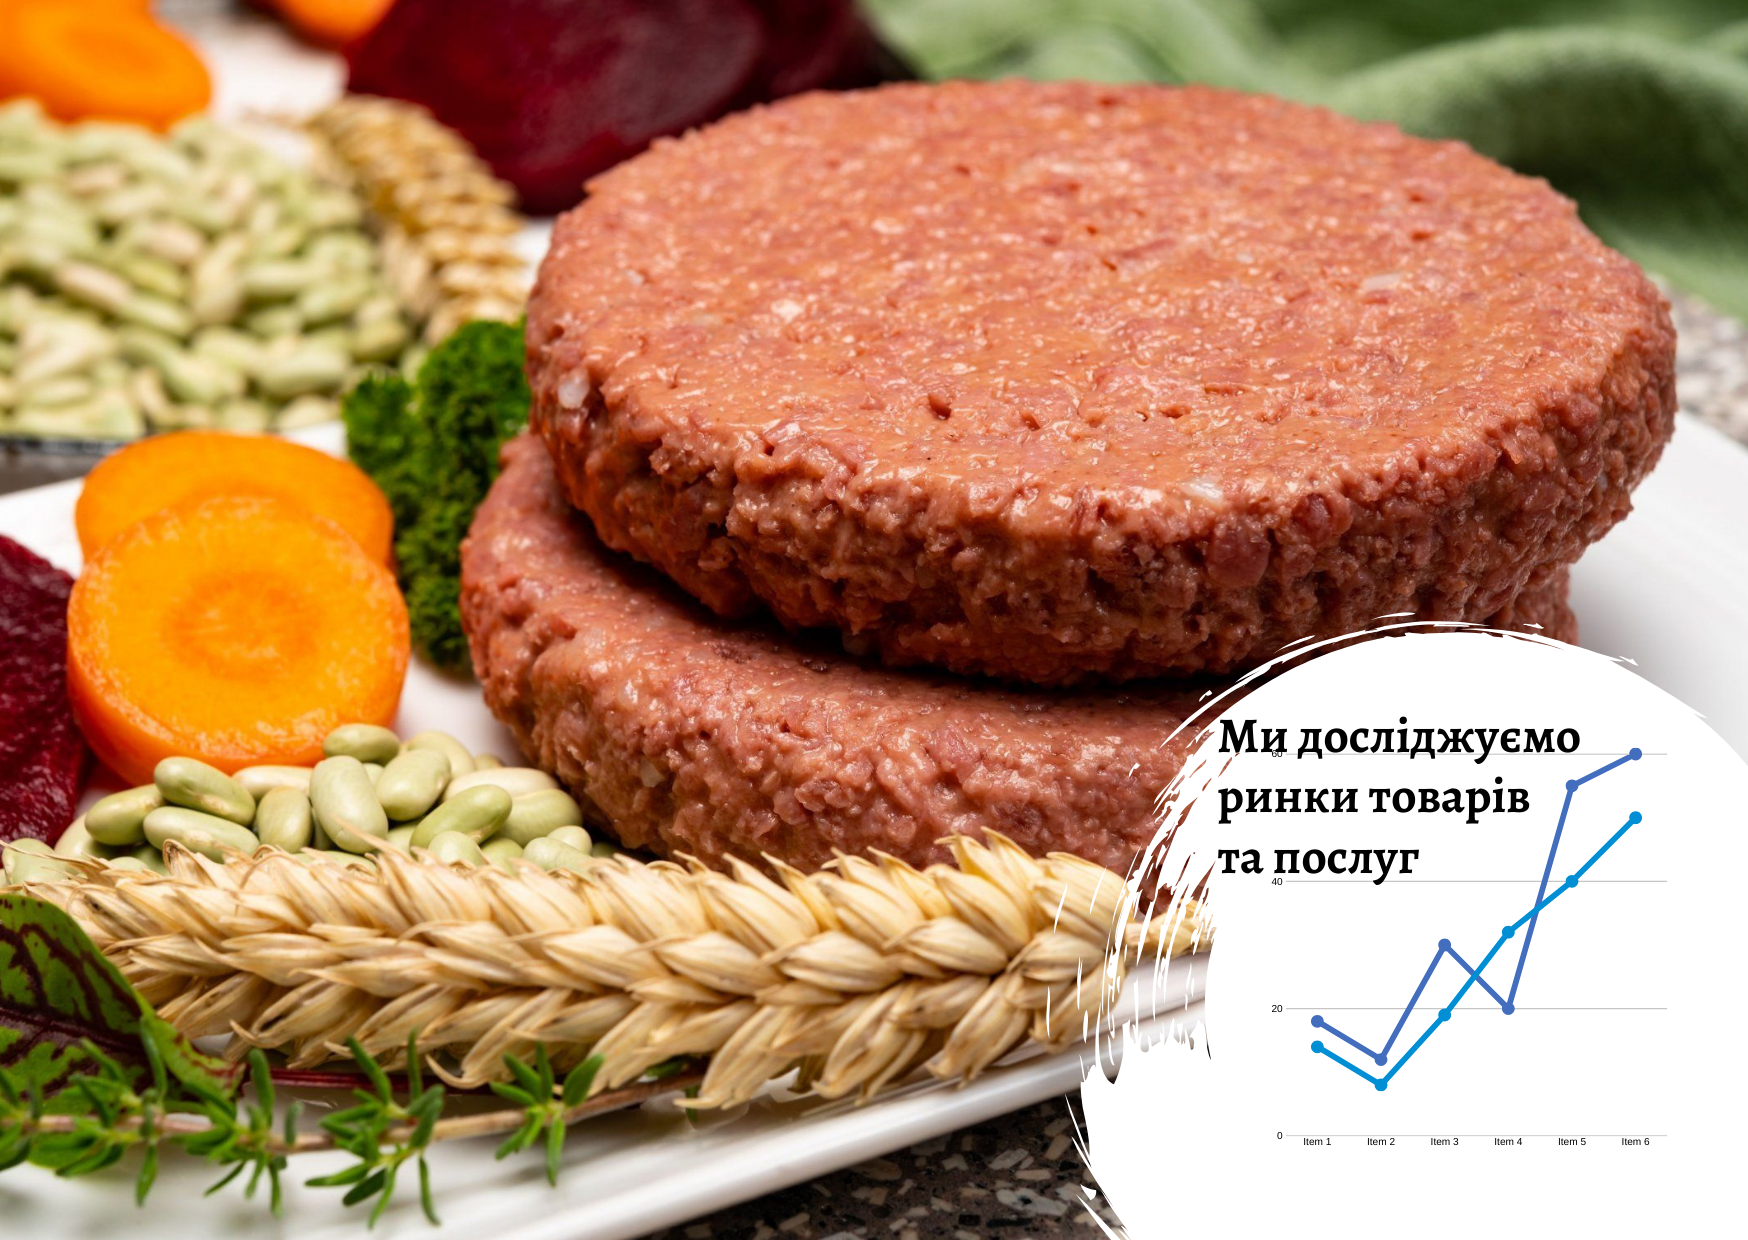 Рынок растительного мяса в Украине – перспективная ниша для бизнеса в Украине